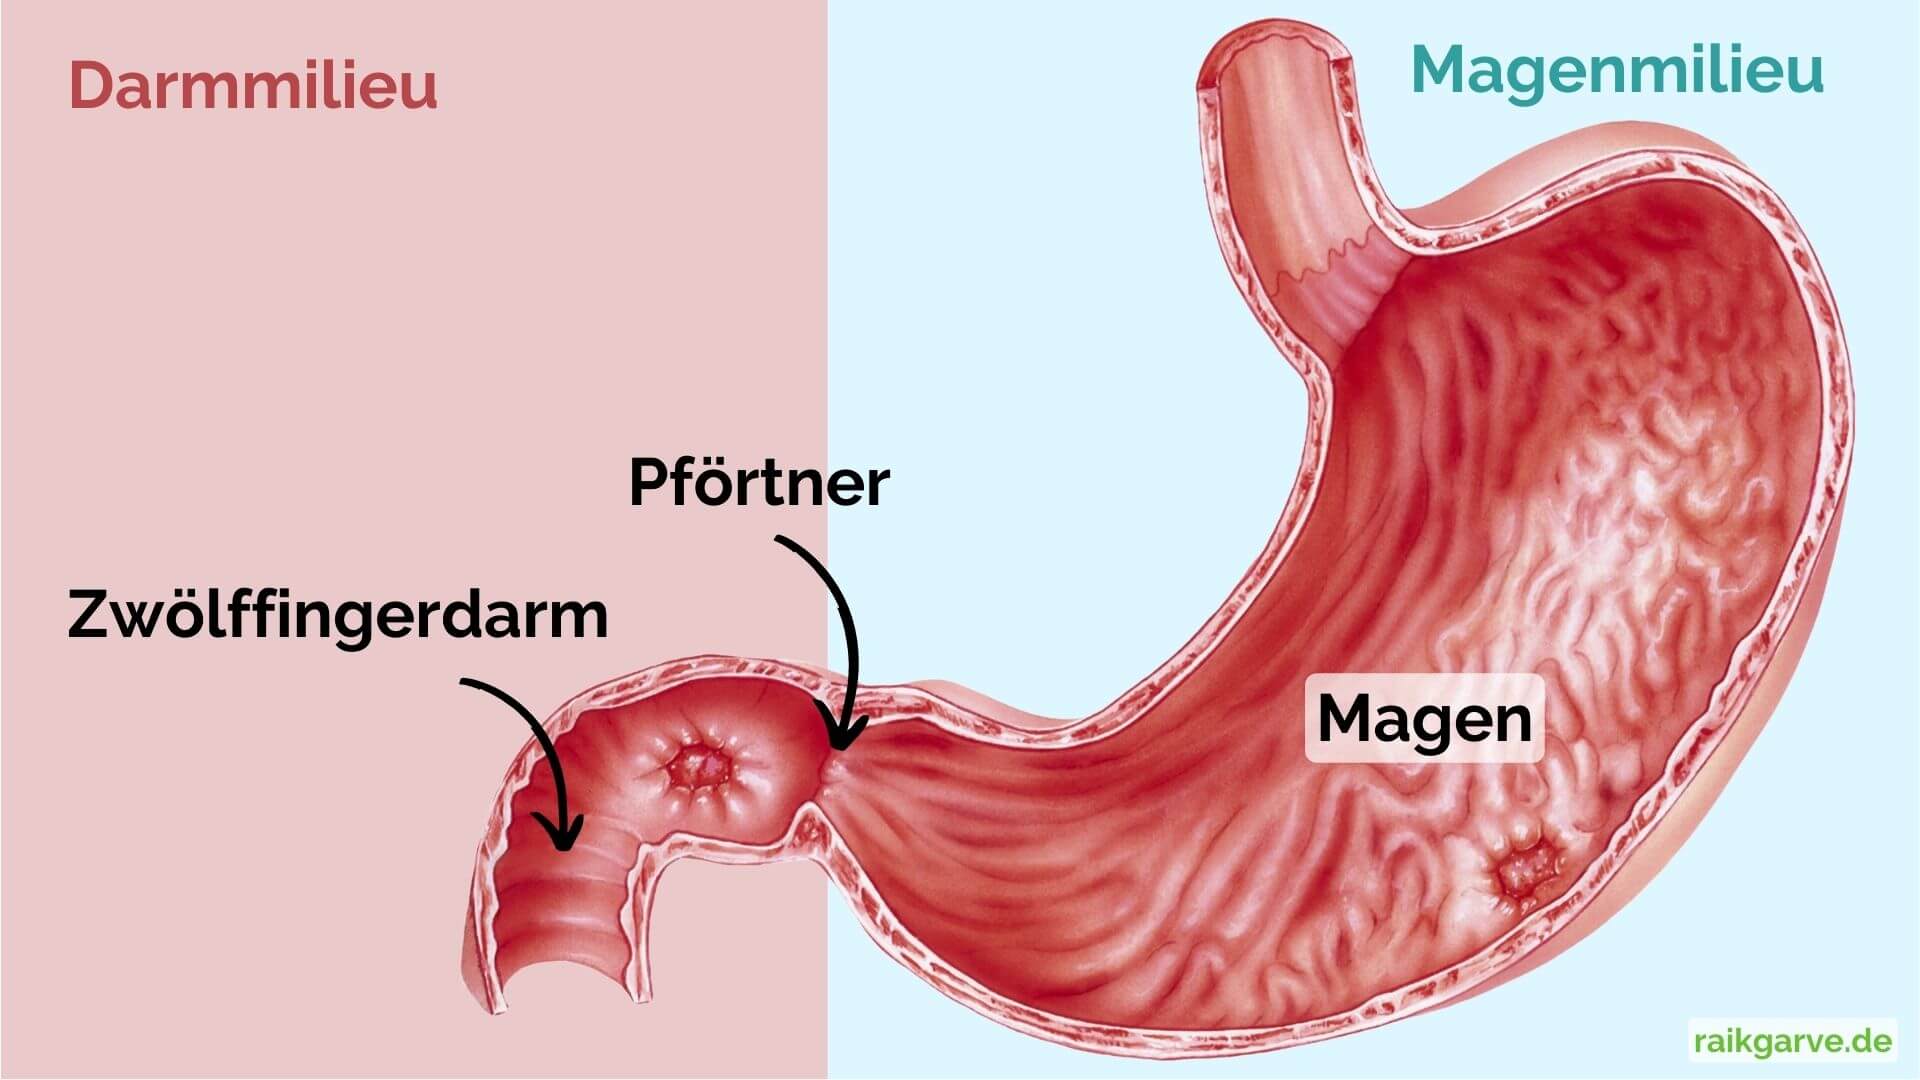 Anatomie des Magens mit Darm- und Magenmilieu